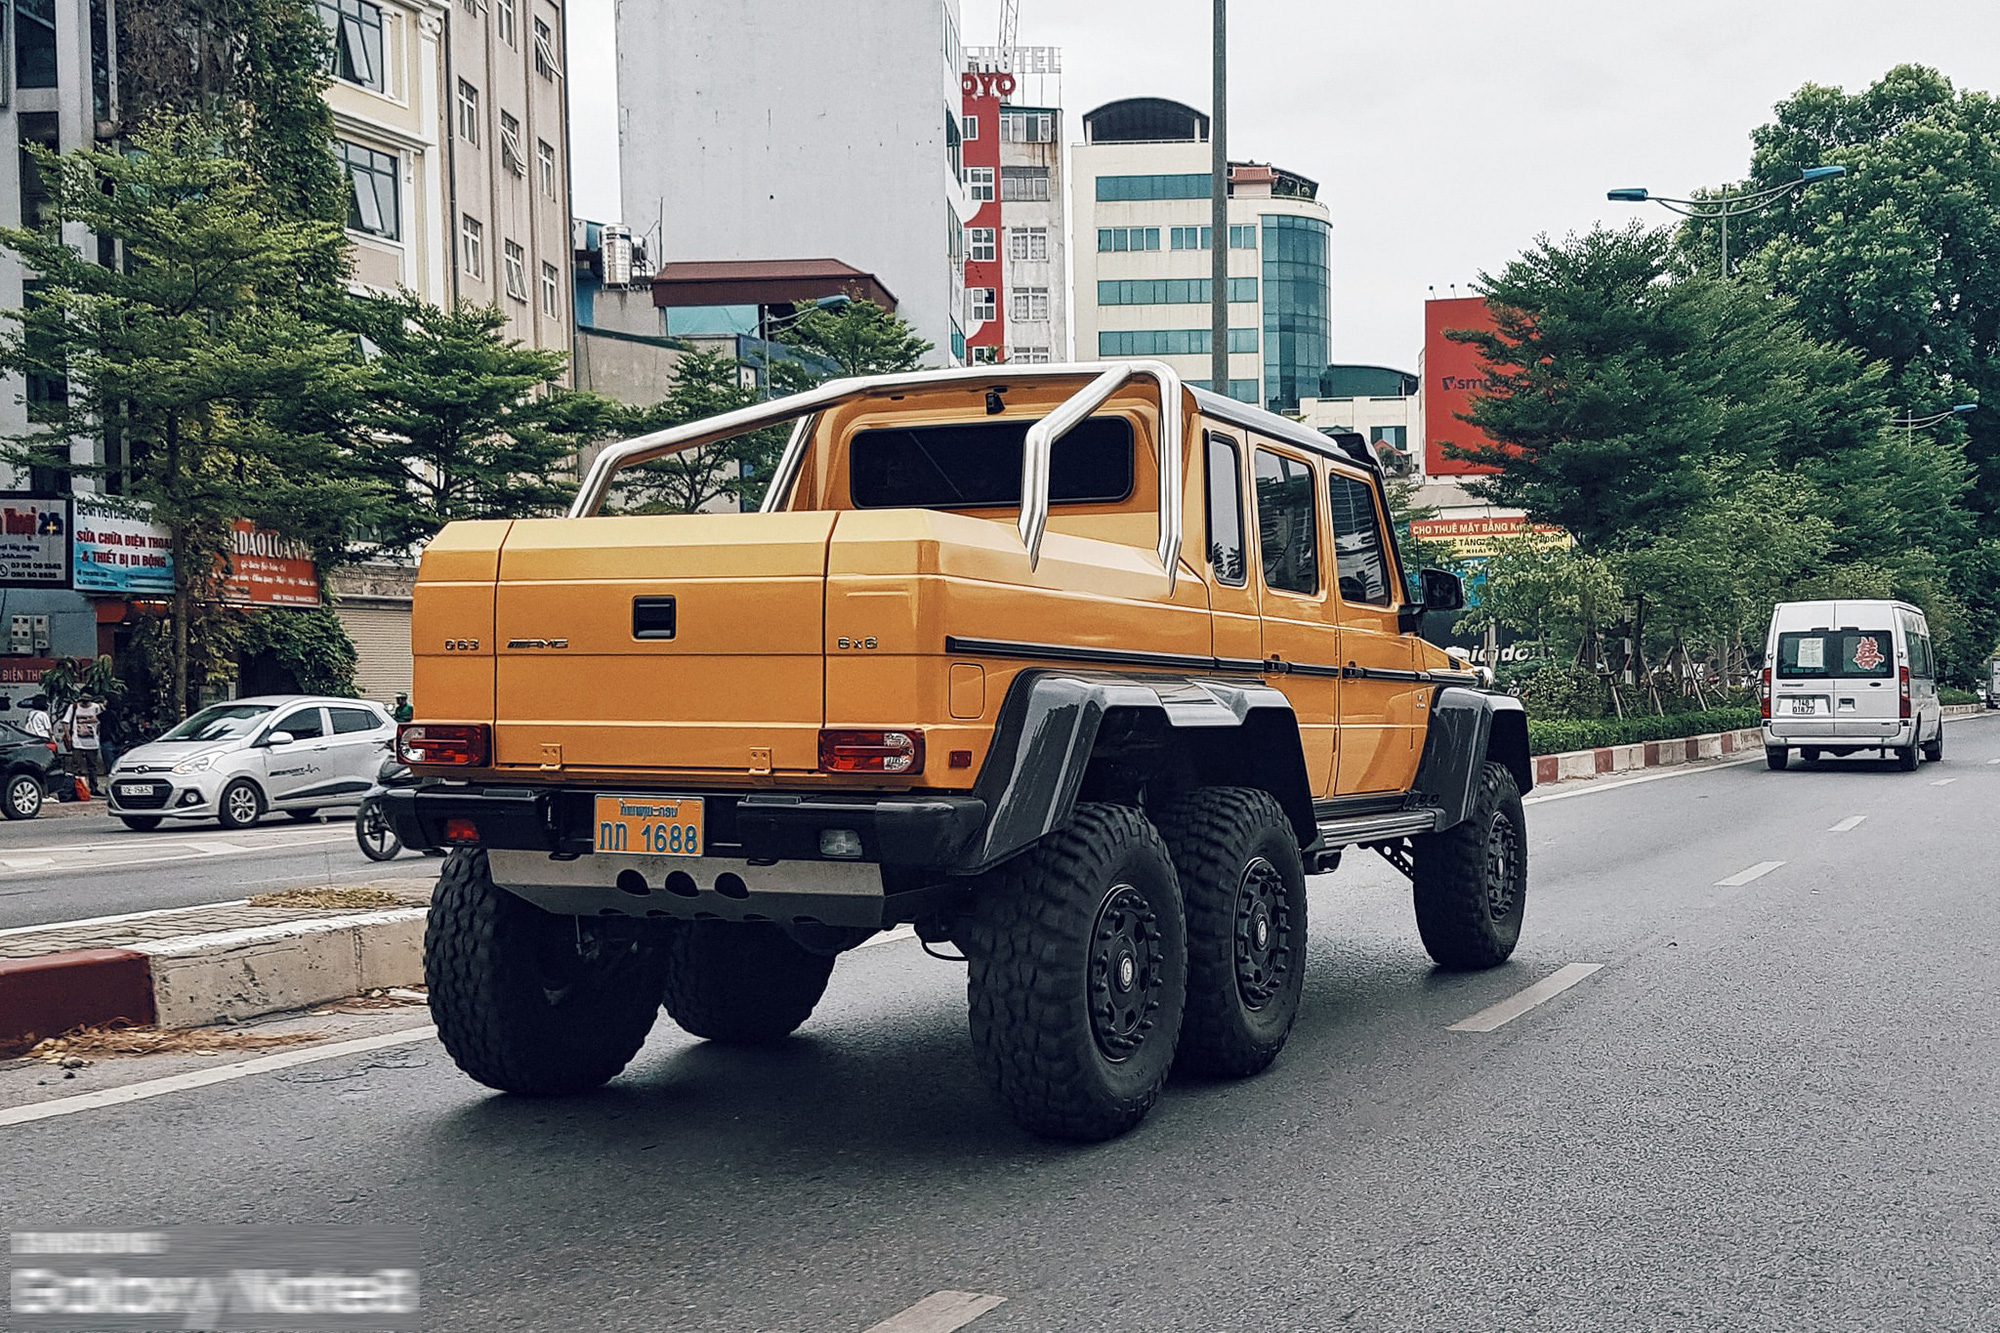 Cực phẩm Mercedes-Benz G63 AMG 6x6 của đại gia bí ẩn lăn bánh trên đường phố Hà Nội - Ảnh 4.